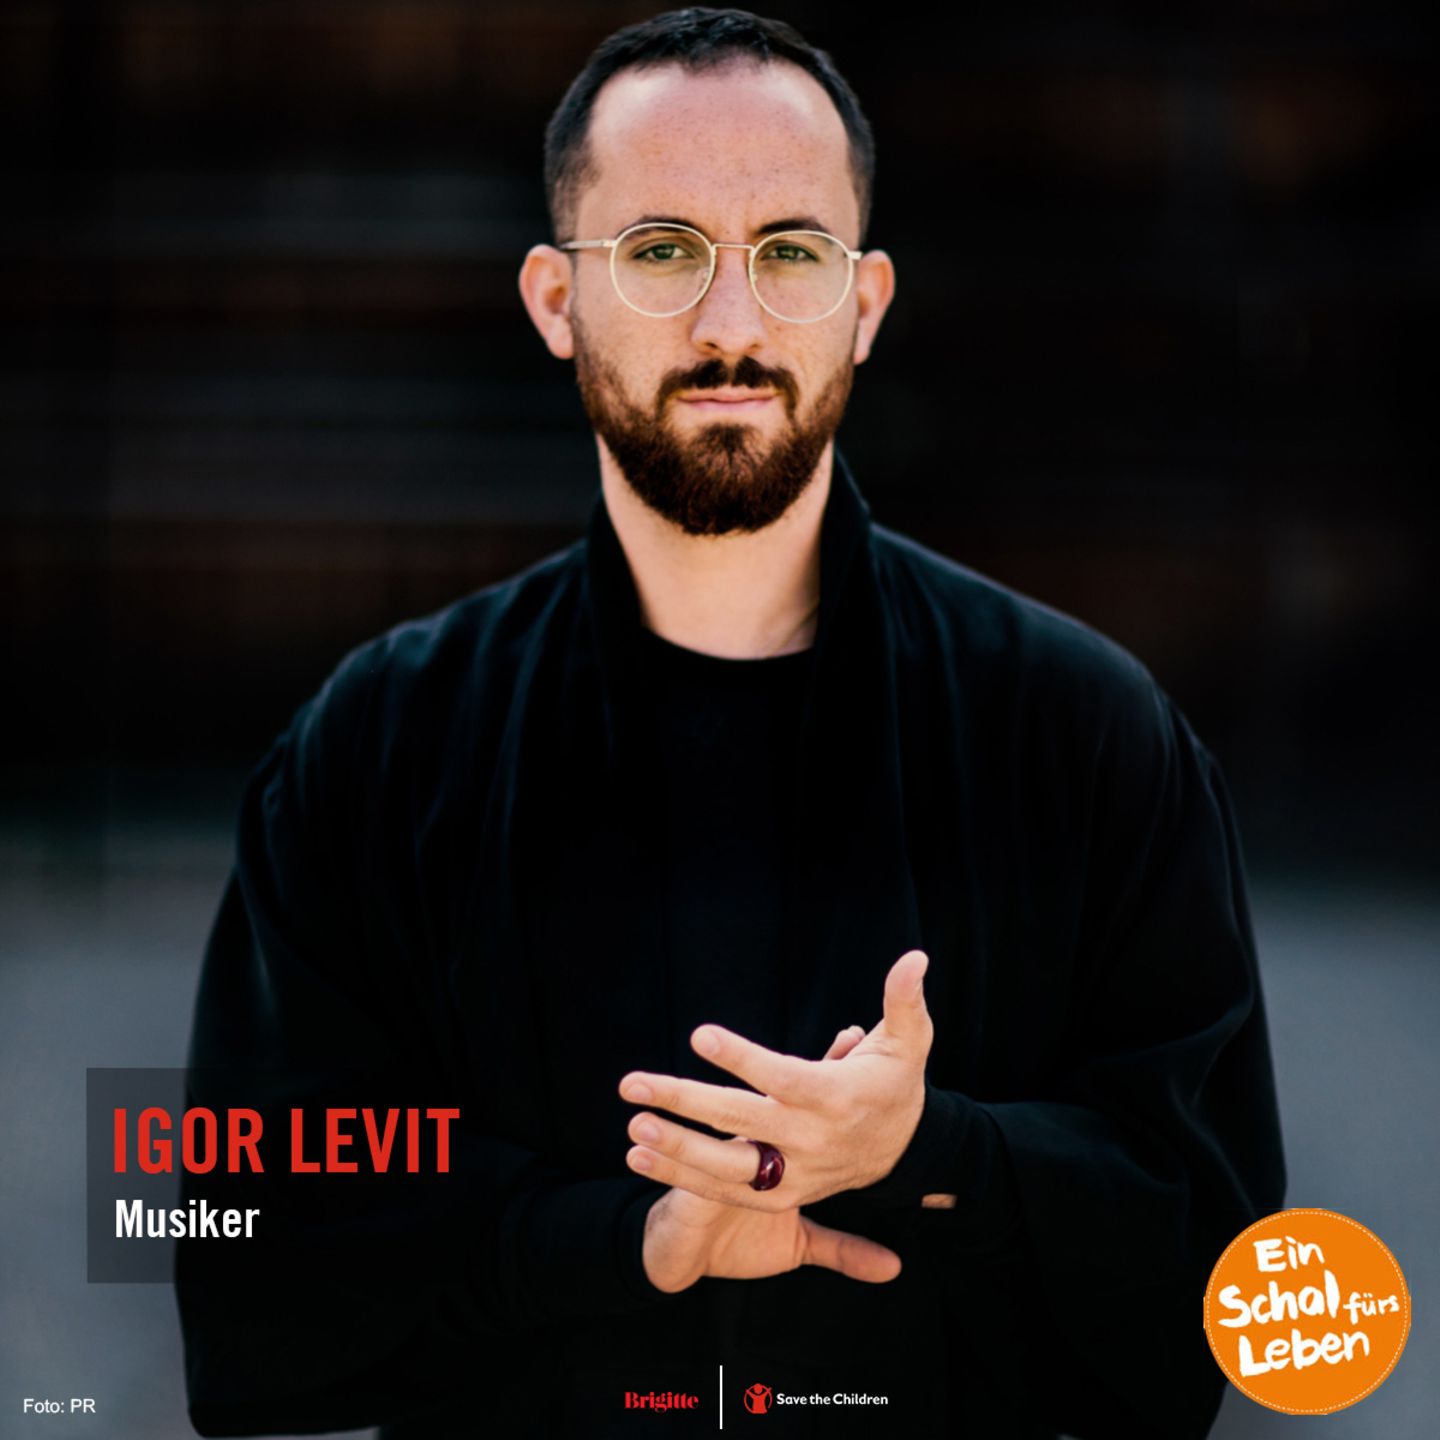 Schal fürs Leben - Igor Levit